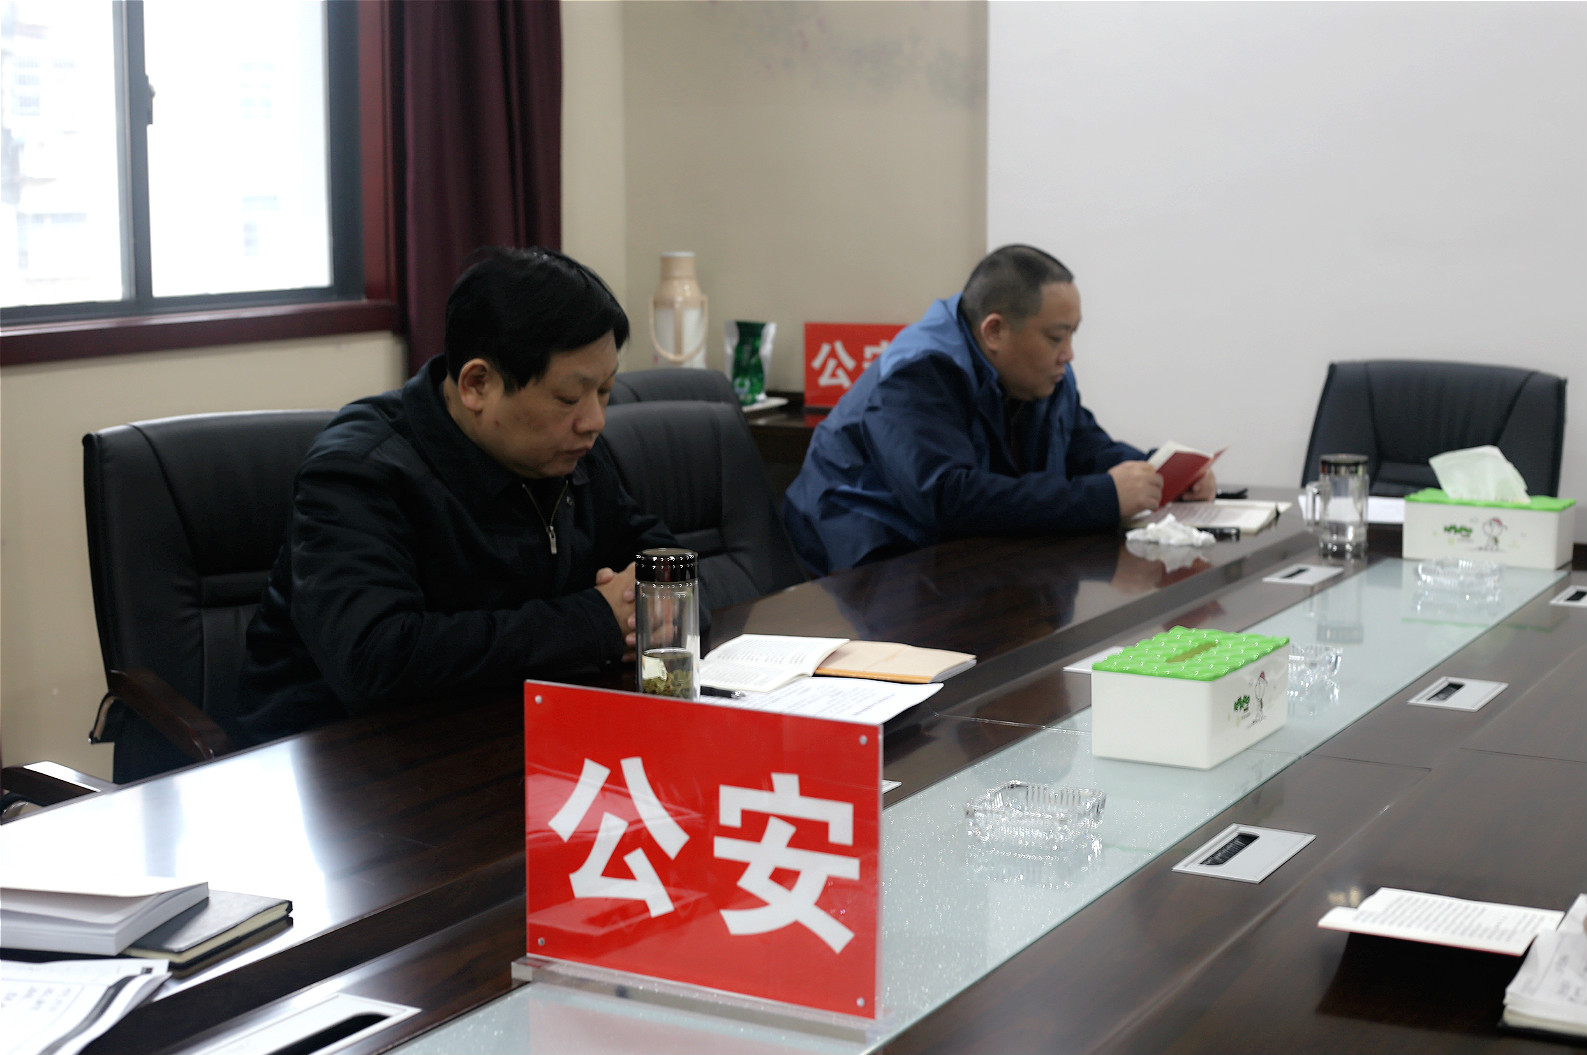 公安农发行组织党员学习最新修订的《党章》